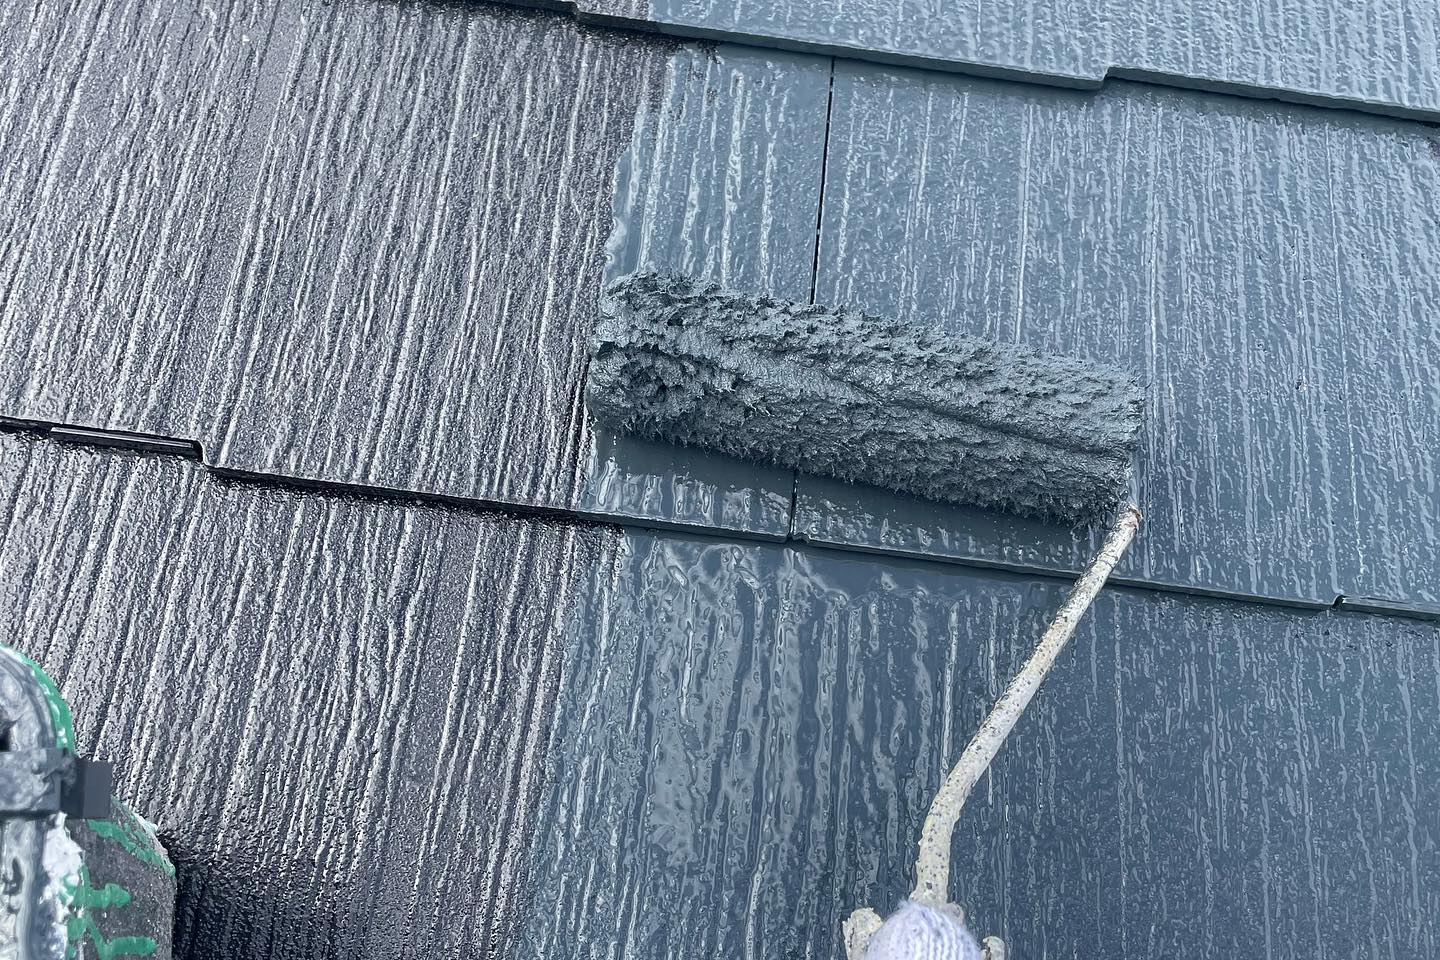 H様邸作業工程
雨ばっかりで出来なかった屋根がようやく塗れました。
昨日はめっちゃ寒かった。
あとベランダが痛んでいたので、下塗りを入れさせて頂きました。
これならもう大丈夫！
あとプロフィール画像変えてみました。どうでしょーか？